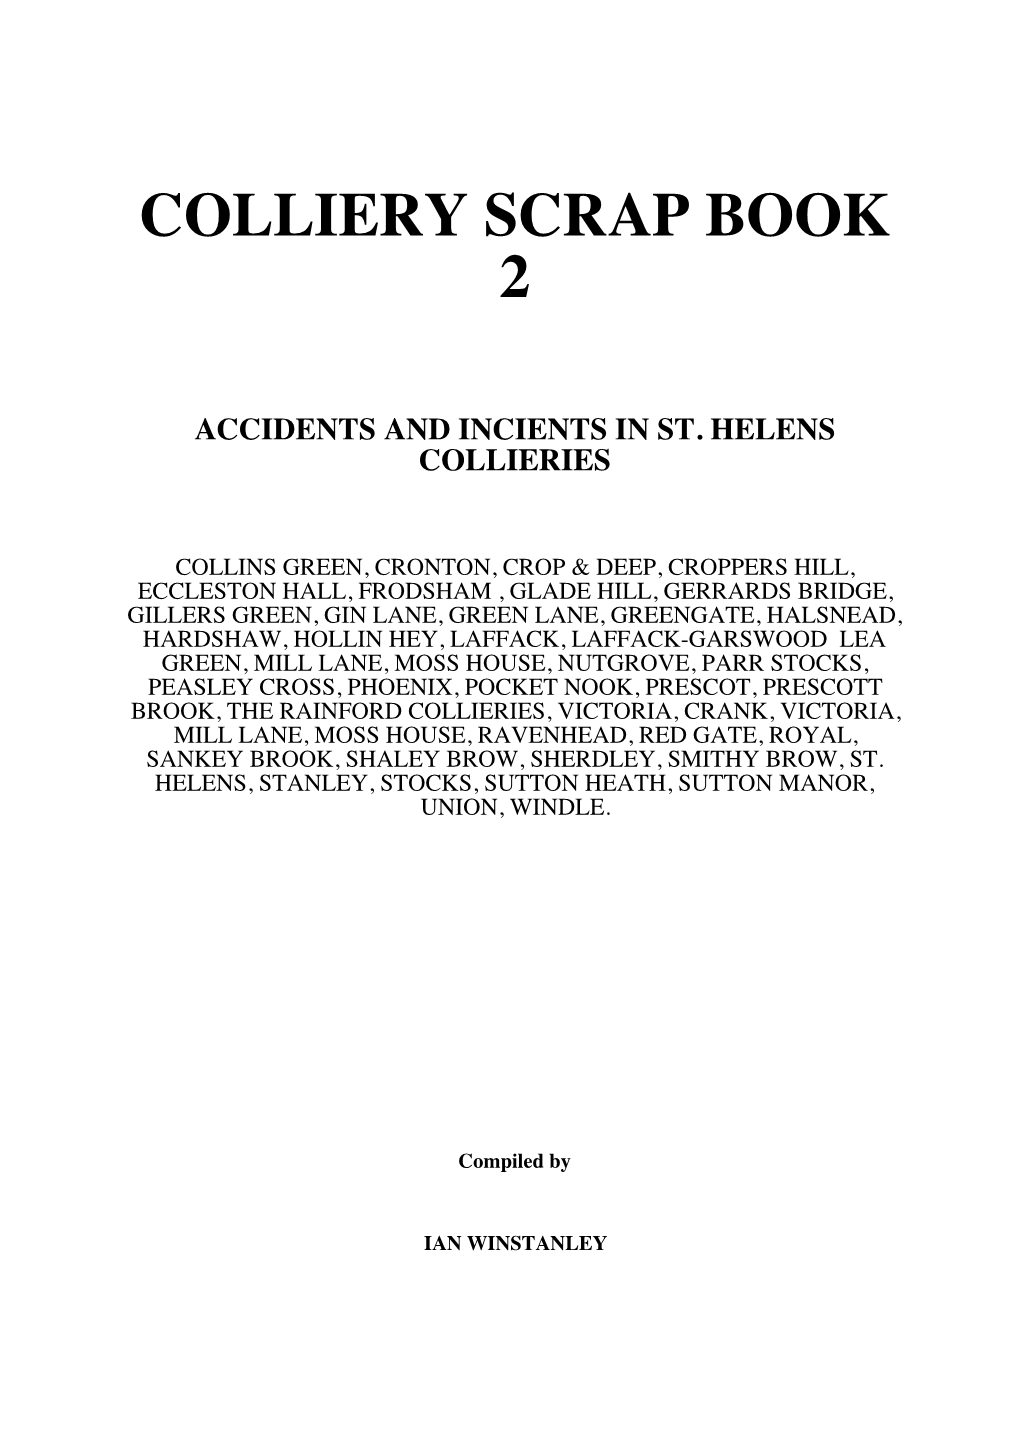 Colliery Scrap Book 2